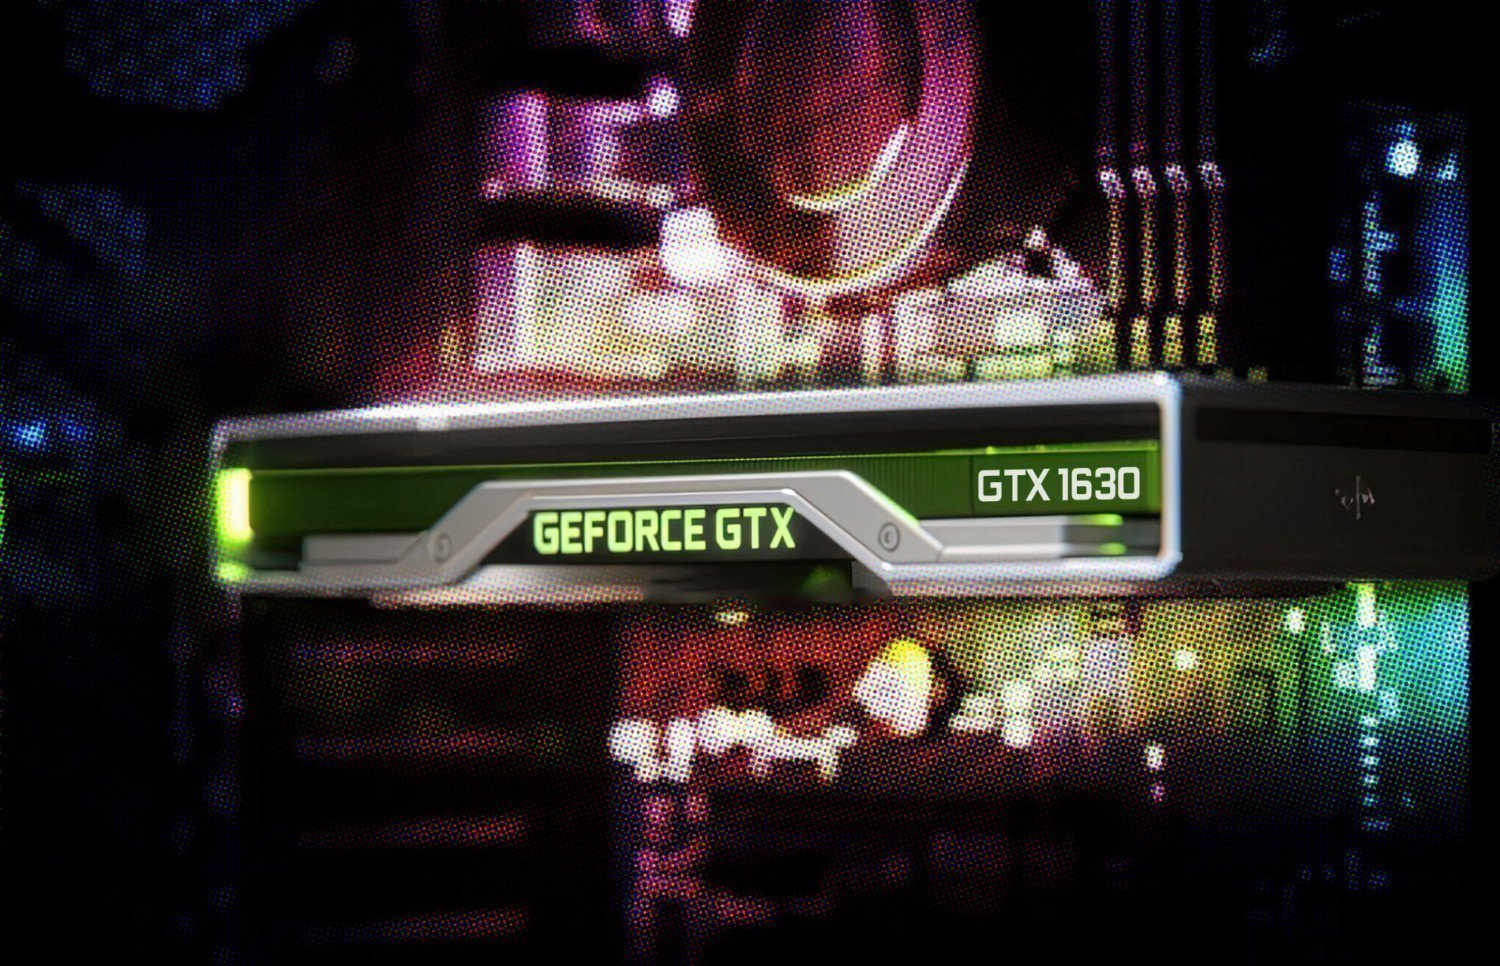 Nvidia yakinda geforce gtx 1630 ekran kartini duyurabilir 20220518 1